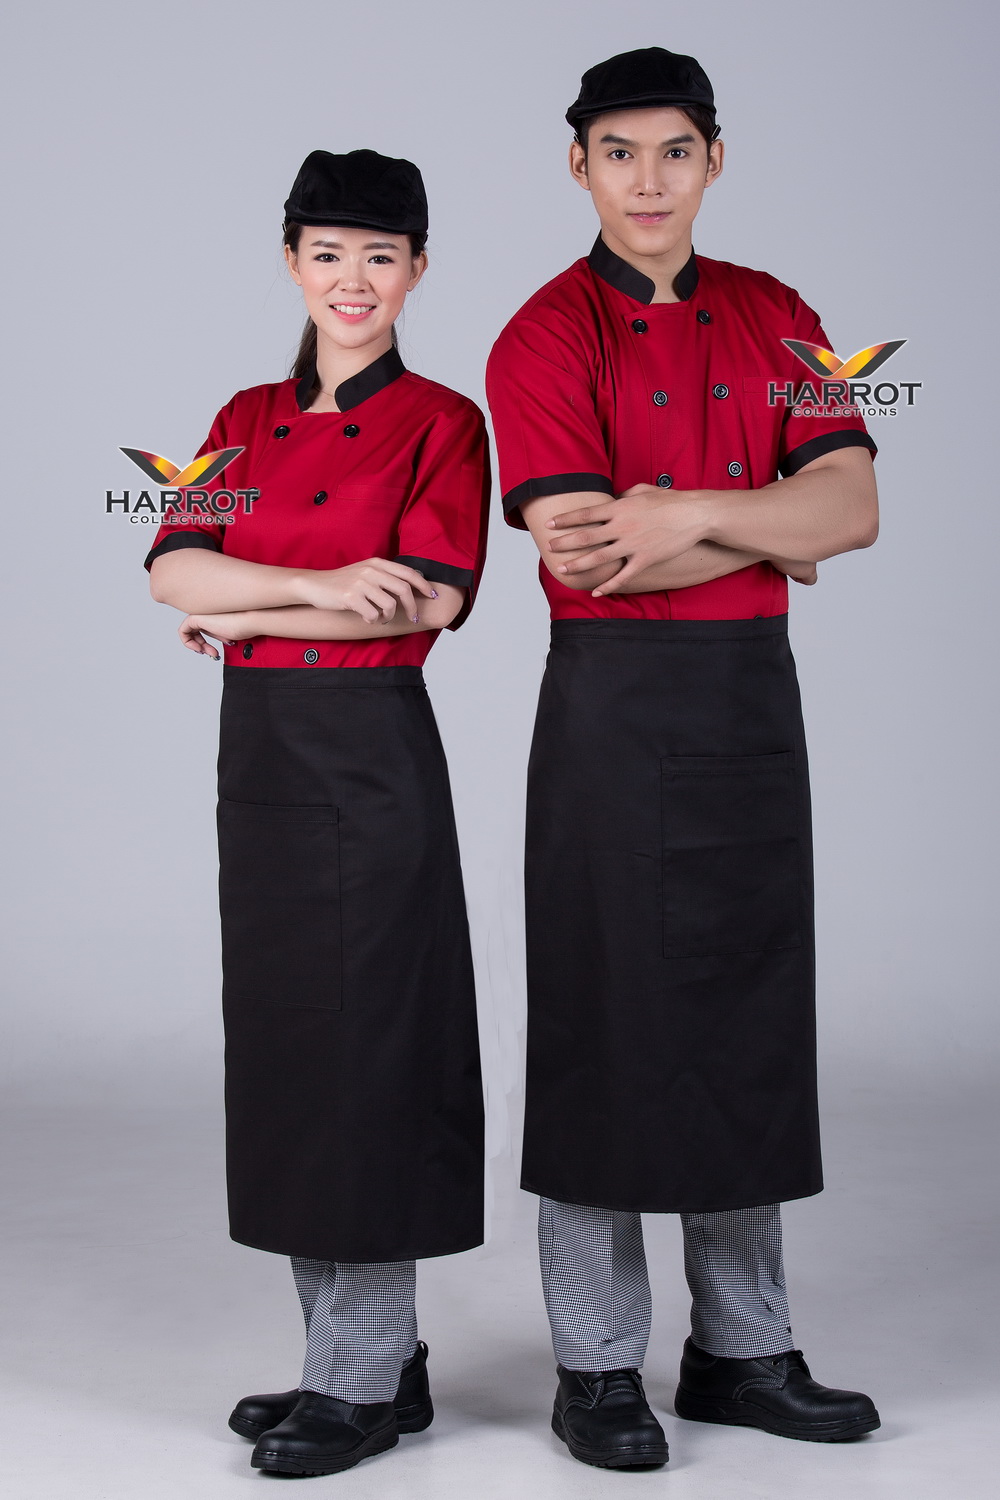 เสื้อกุ๊ก เสื้อเชฟ ชุดเชฟ เสื้อพ่อครัว แขนสั้น สีแดง ปกดำ (FSS0131)